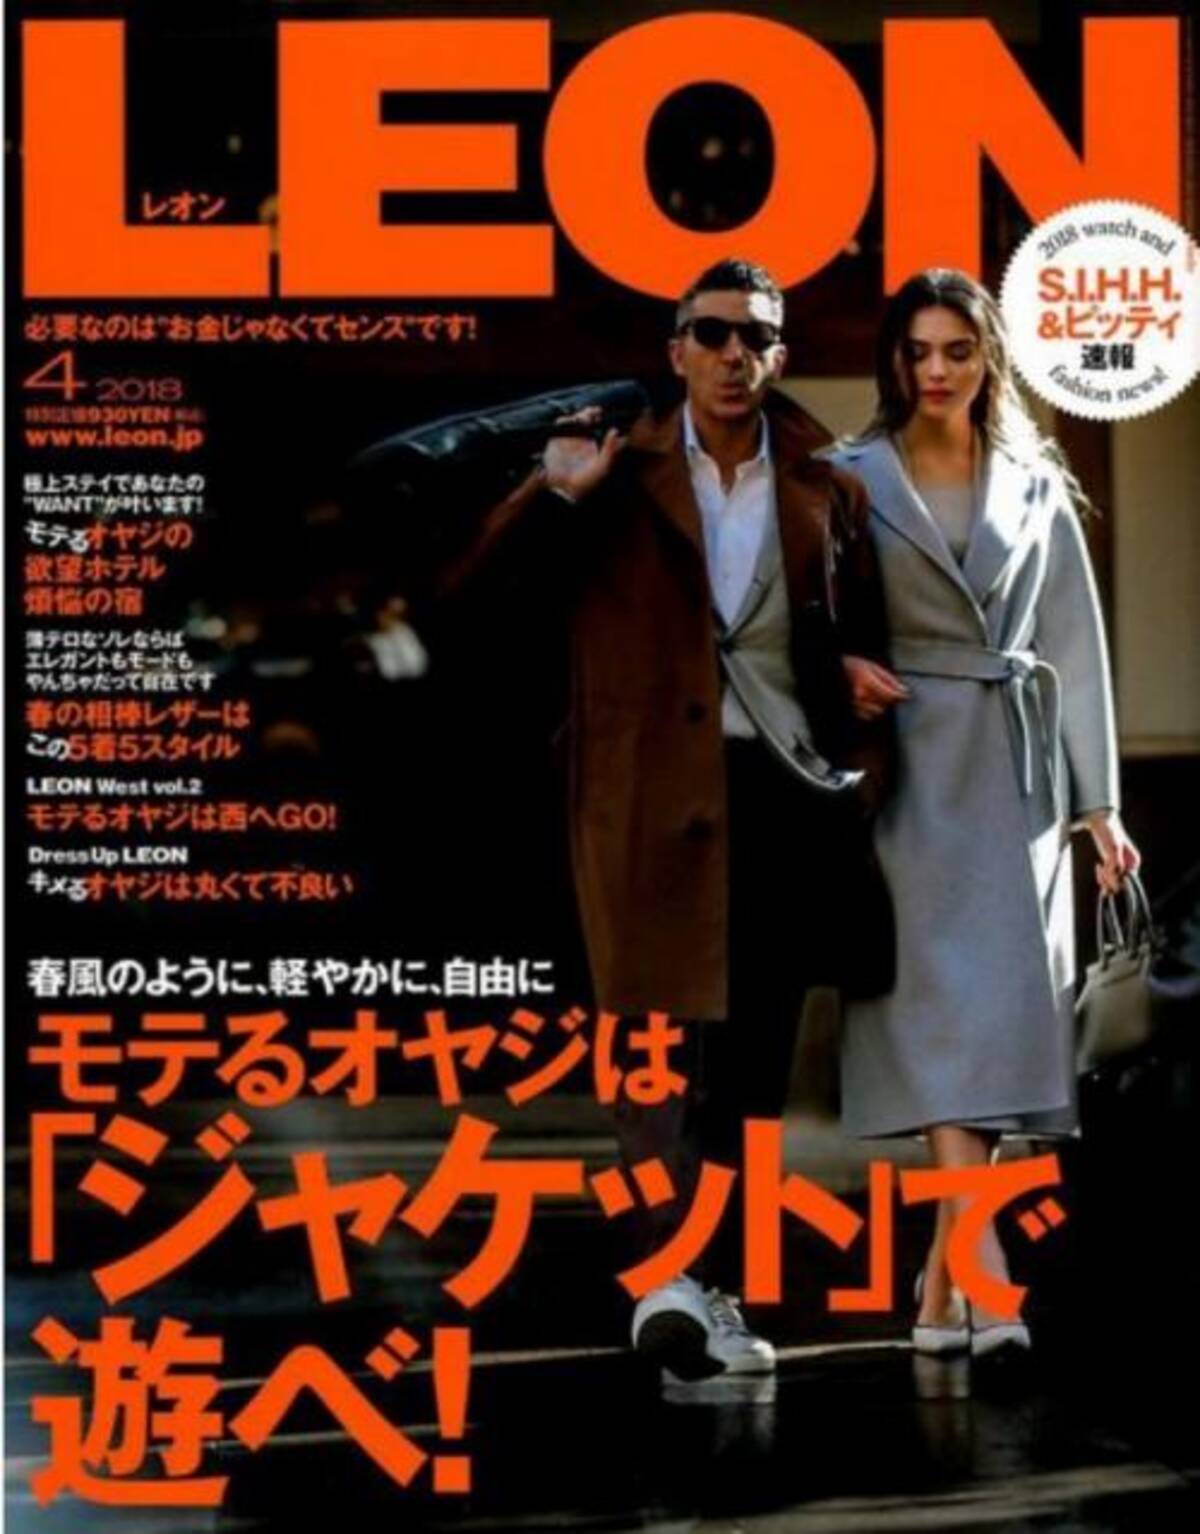 おふざけというか変態 どんなにイケメンでも許されない 雑誌 Leon のジャケットを遊ぶテクにドン引きの声 18年2月26日 エキサイトニュース